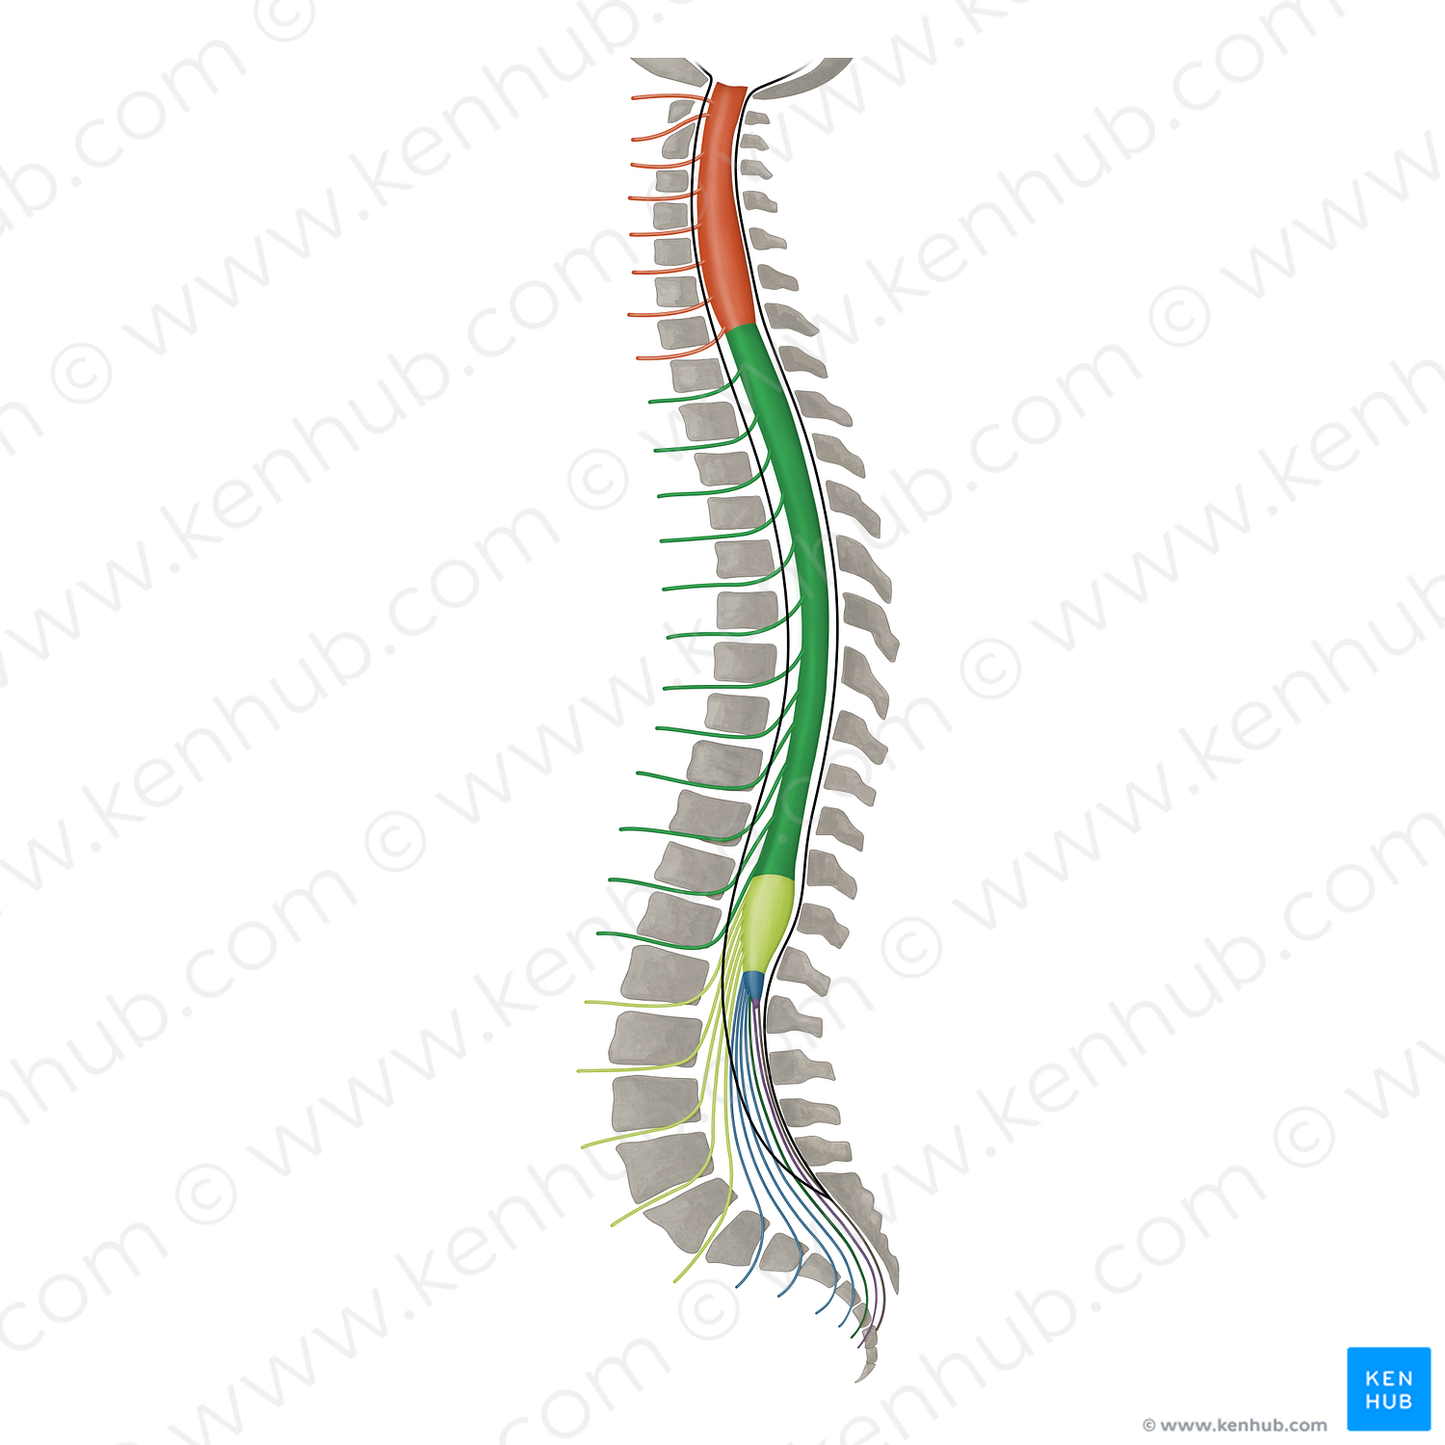 Spinal nerves T1-T12 (#16490)